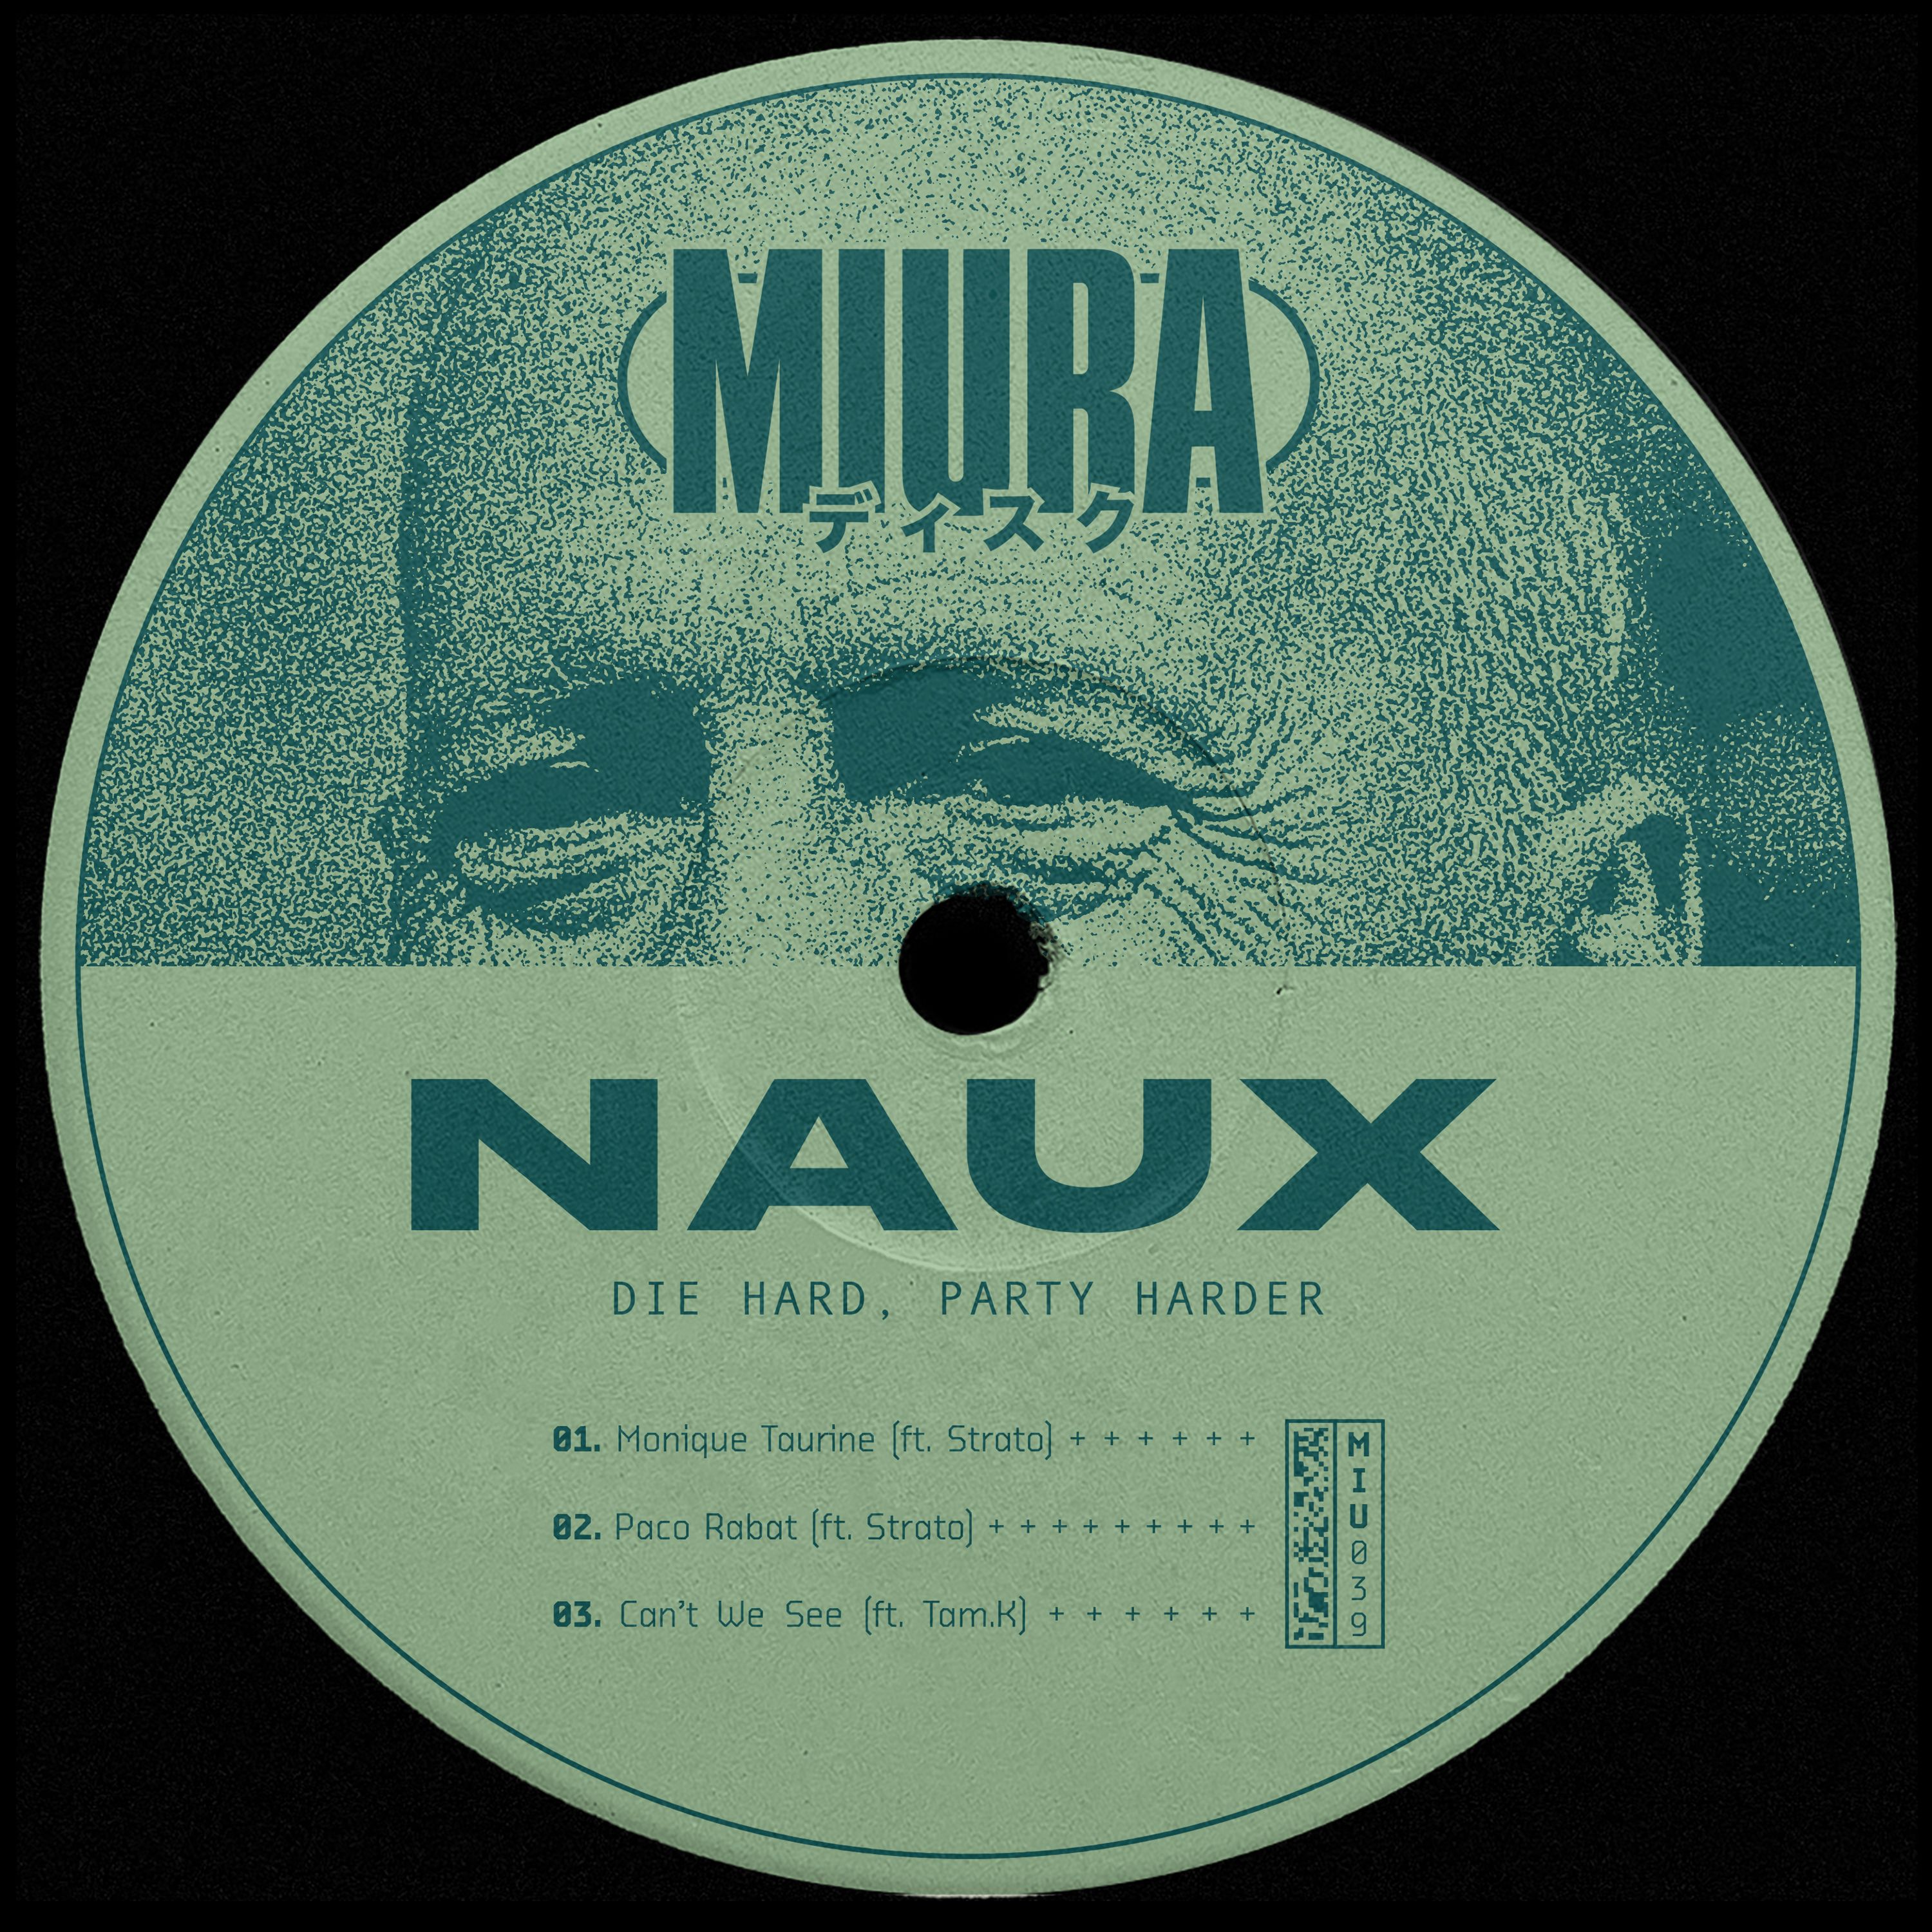 ...을 다운로드하십시오 PREMIERE: Naux & Strato - Monique Taurine [Miura Records]